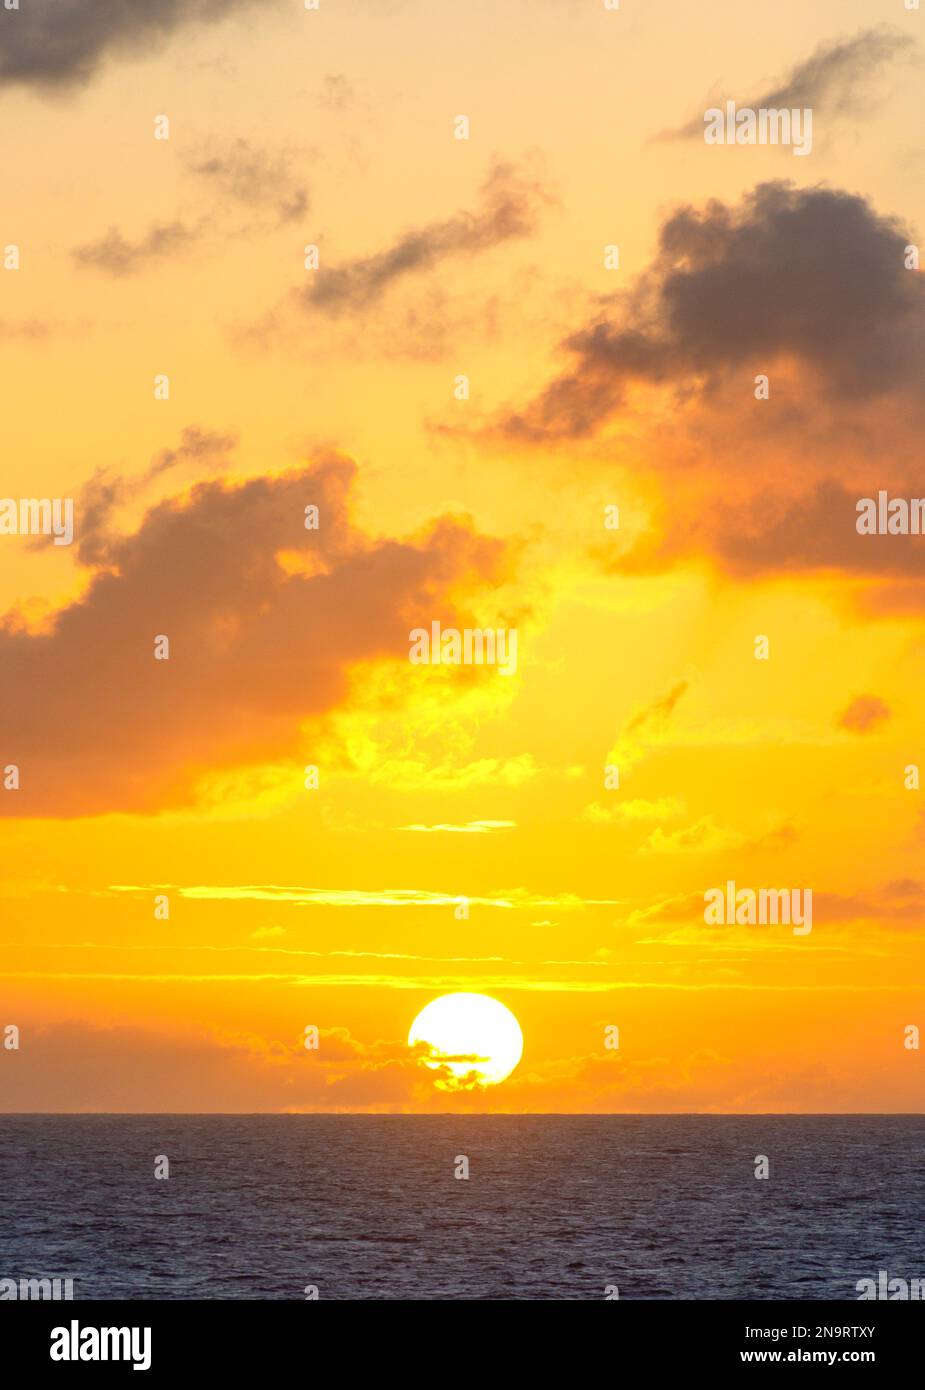 Sonnenuntergang von P&O Avira Kreuzfahrtschiff, kleine Antillen, Karibik Stockfoto